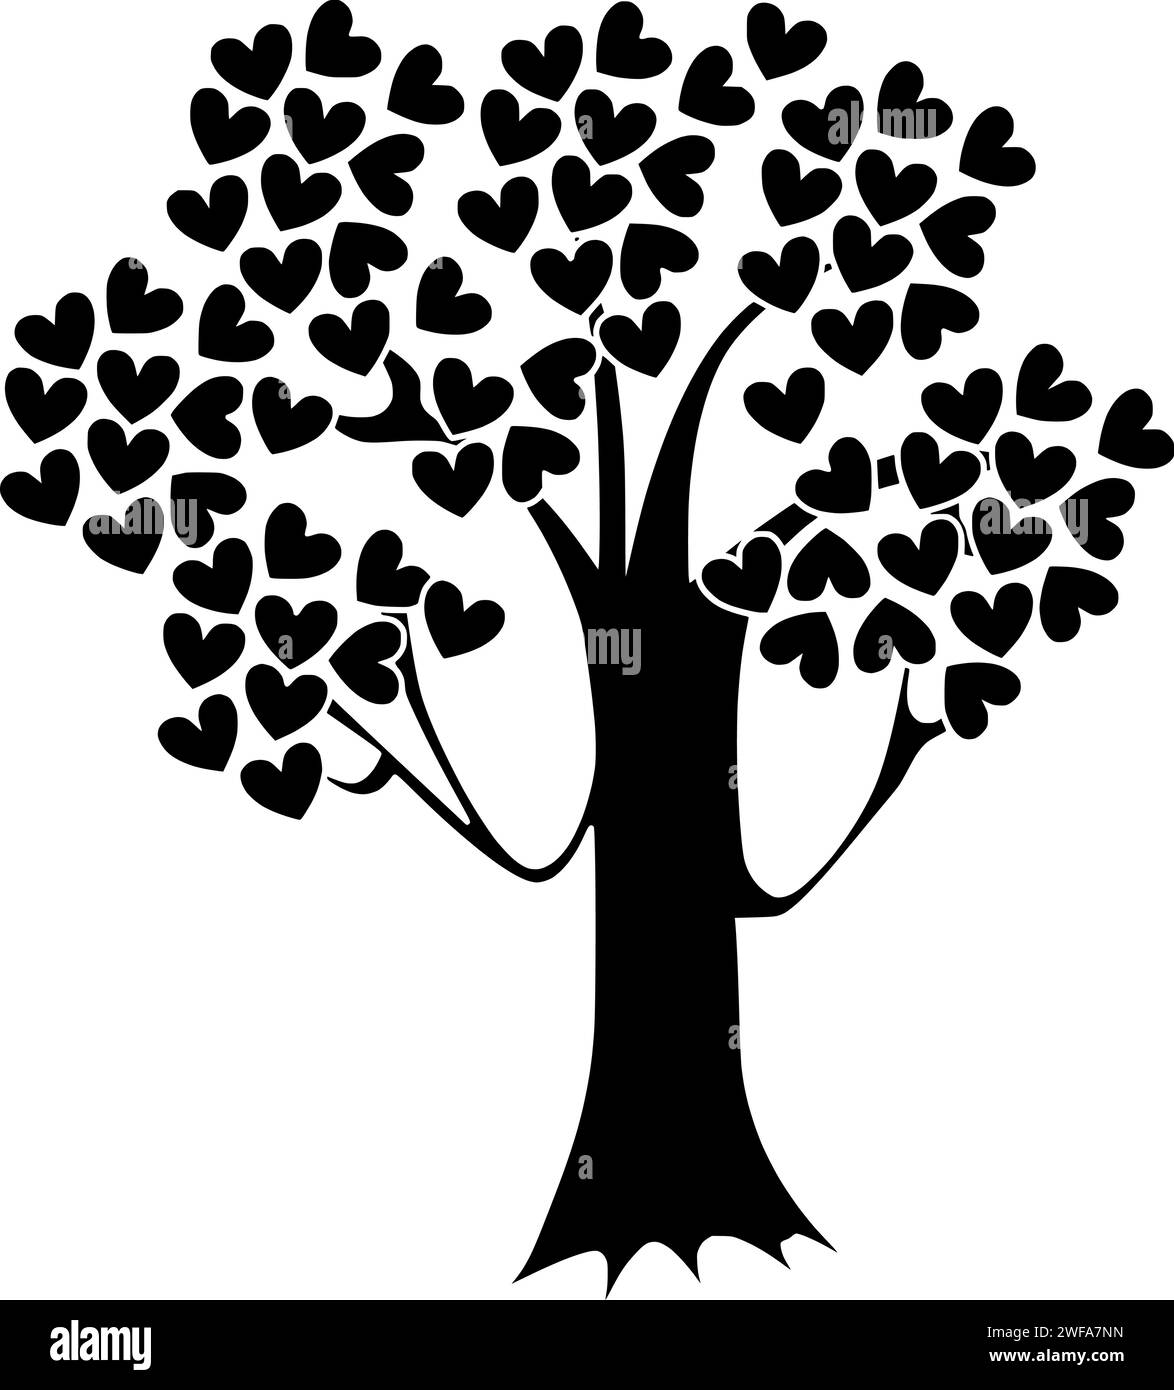 Baum Illustration Herz Silhouette Natur Logo Liebe Icon Pflanze Umriss valentine natürliche Wald Blatt grün Umwelt Frühling Tag Romantik Form Holz Garten Stamm Stock Vektor